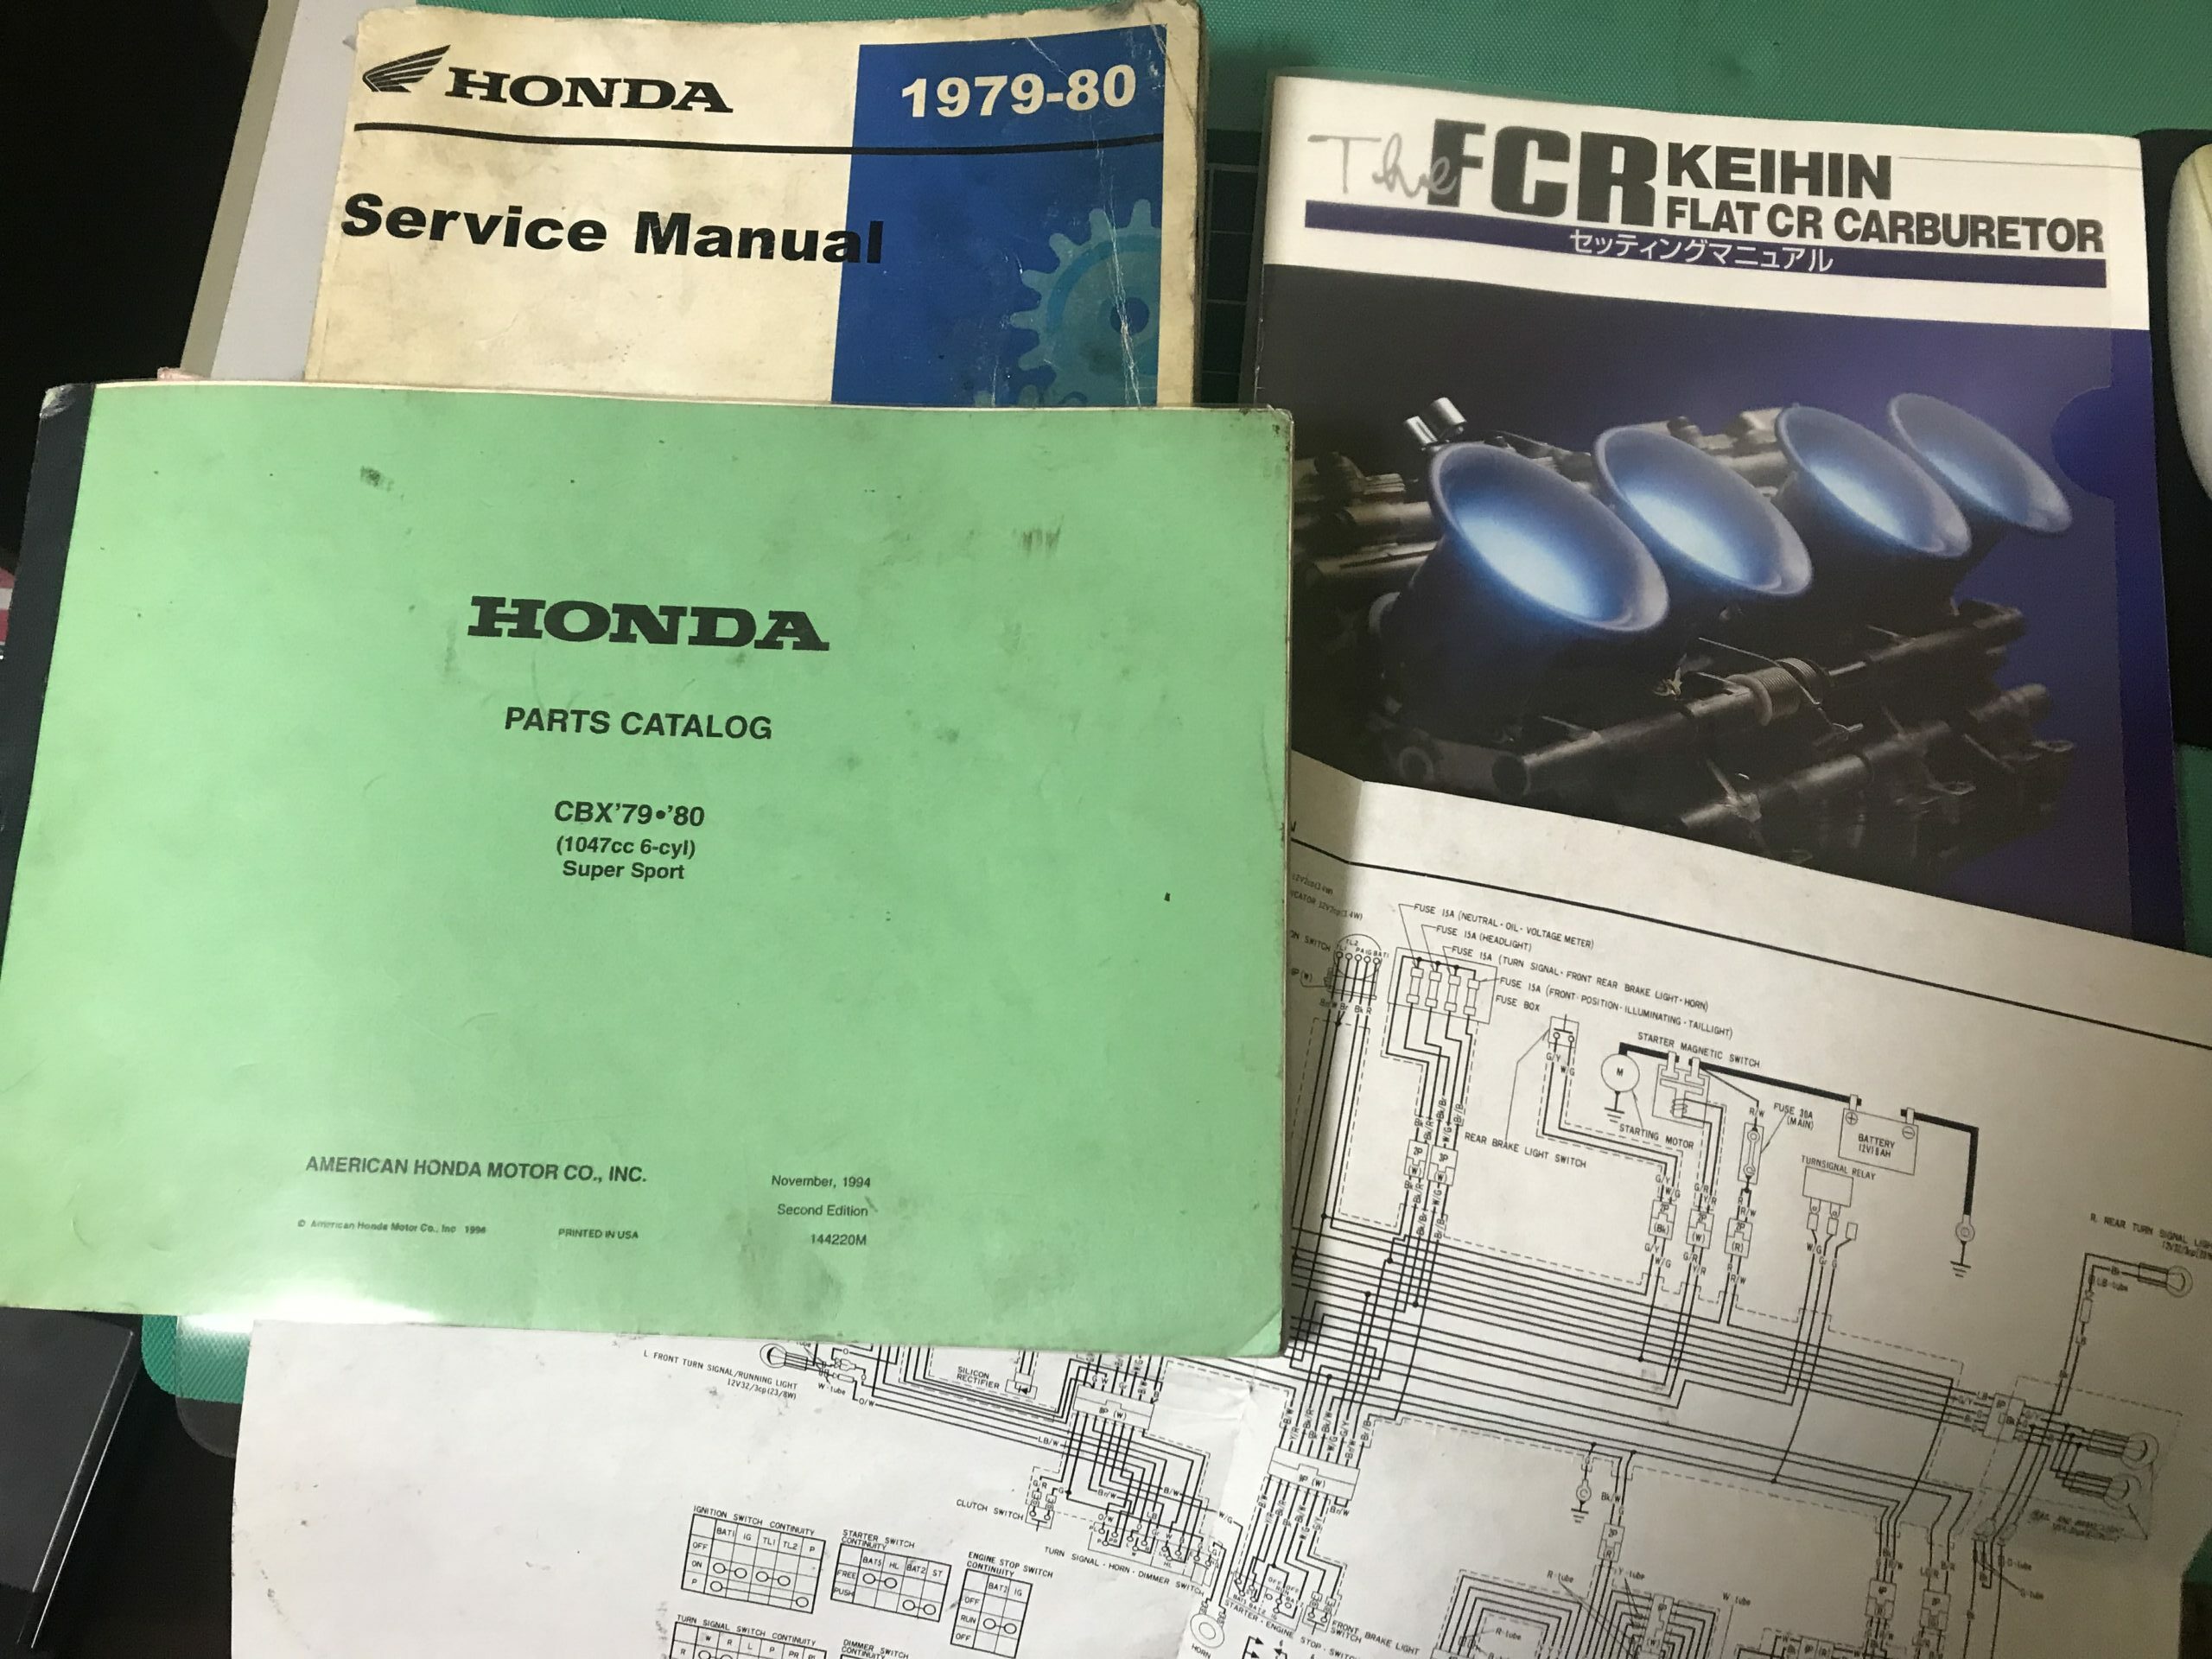 Various manuals